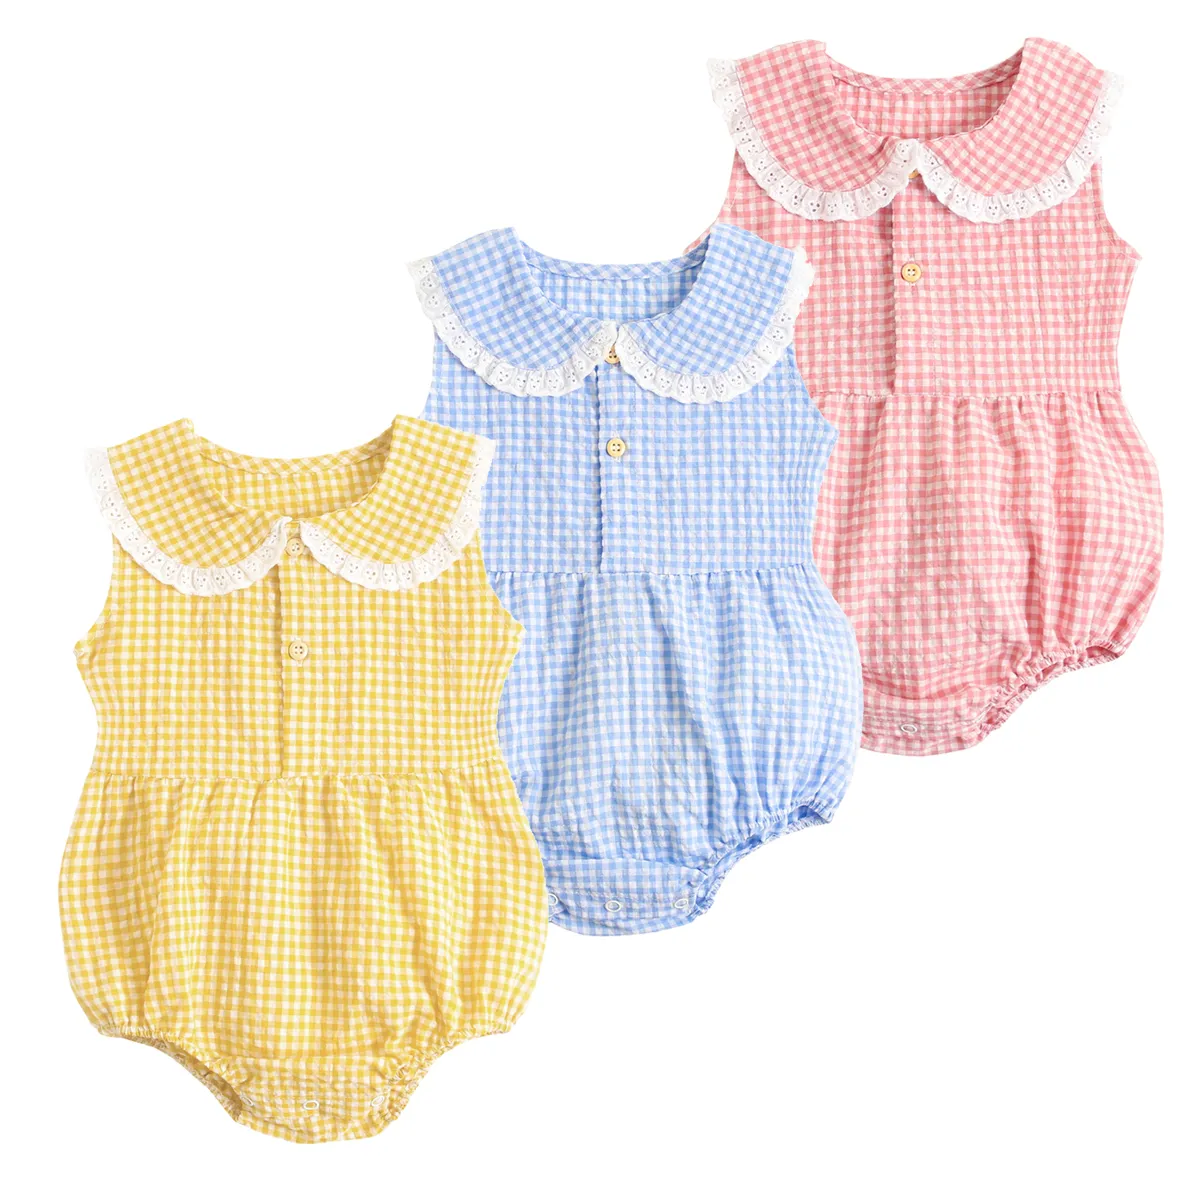 Sanlutoz Sommer Baumwolle Baby Body Neugeborenen Nette Plaid Kleidung für Baby Mädchen Ärmellose Prinzessin Kleinkind Infant Bodys